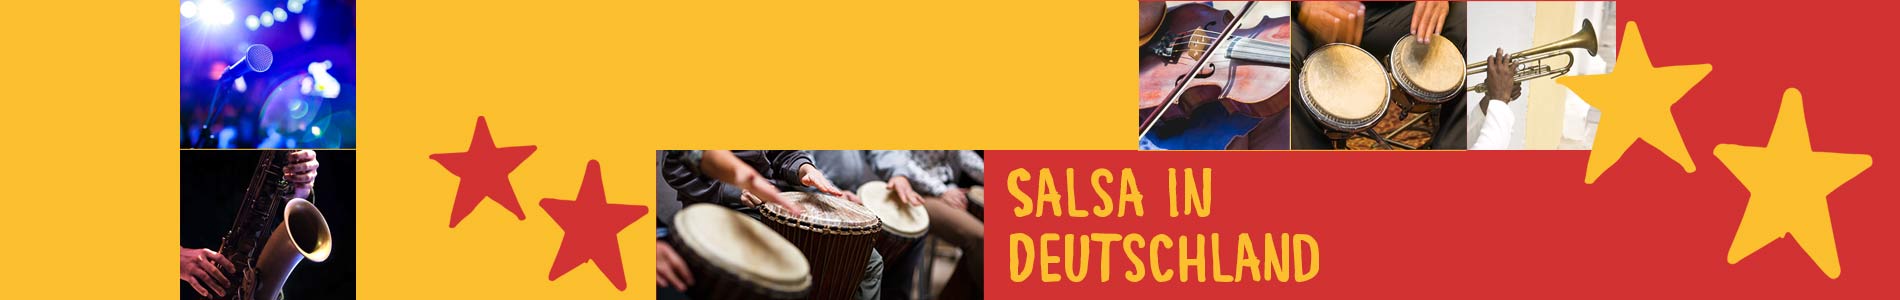 Salsa in Breitungen – Salsa lernen und tanzen, Tanzkurse, Partys, Veranstaltungen